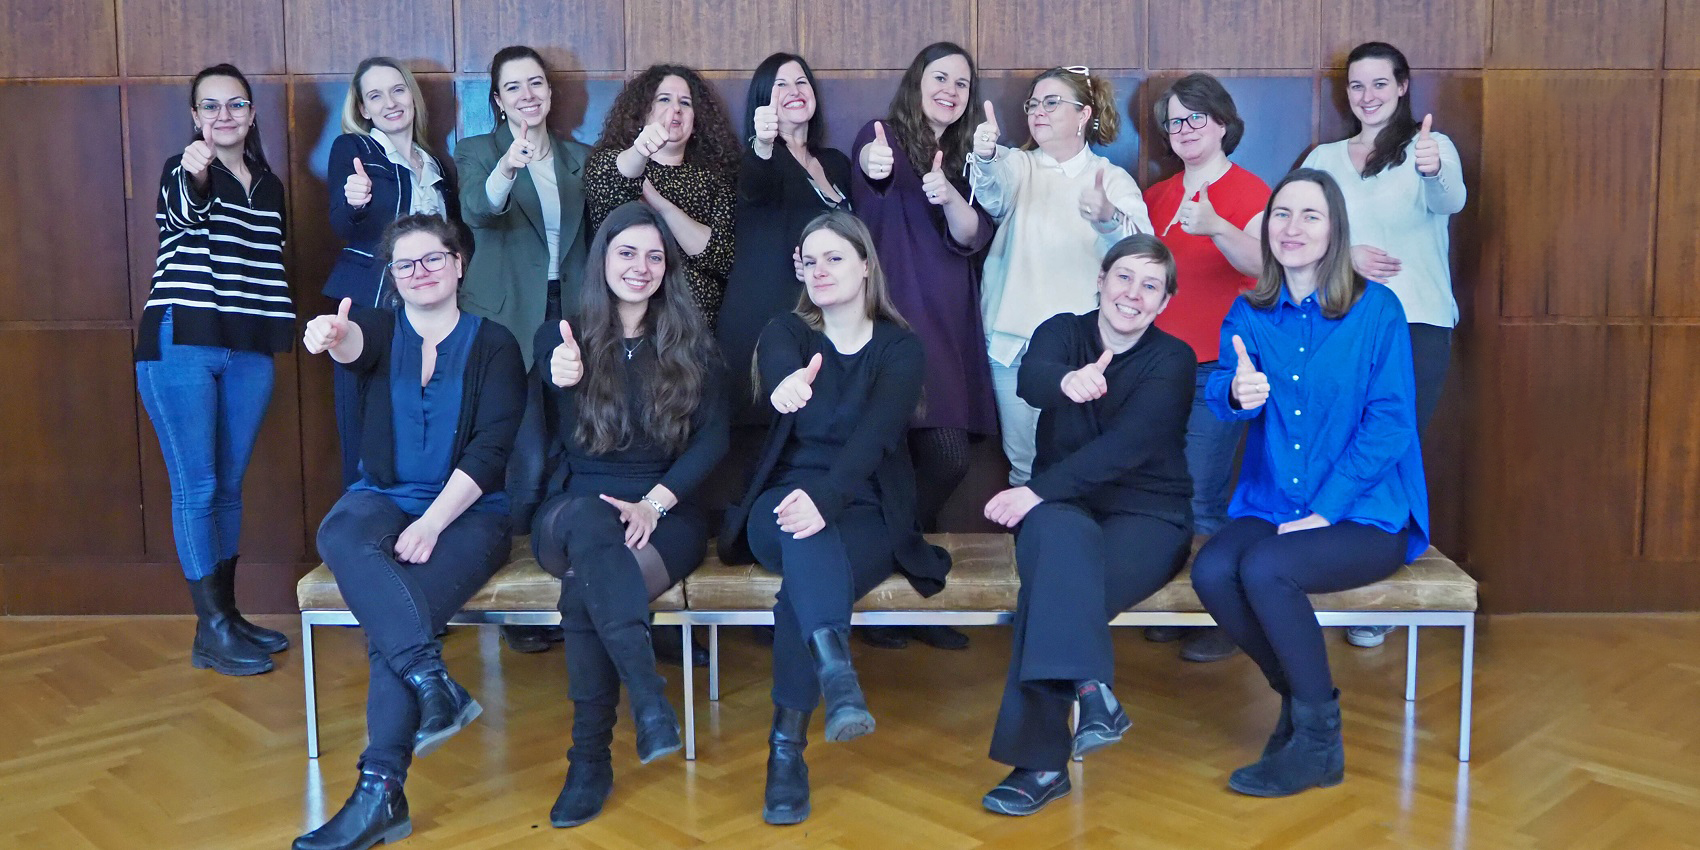 Am 8. März feiern die Mitarbeiterinnen bei Dorotheum Pfand den Internationalen Frauentag 2023